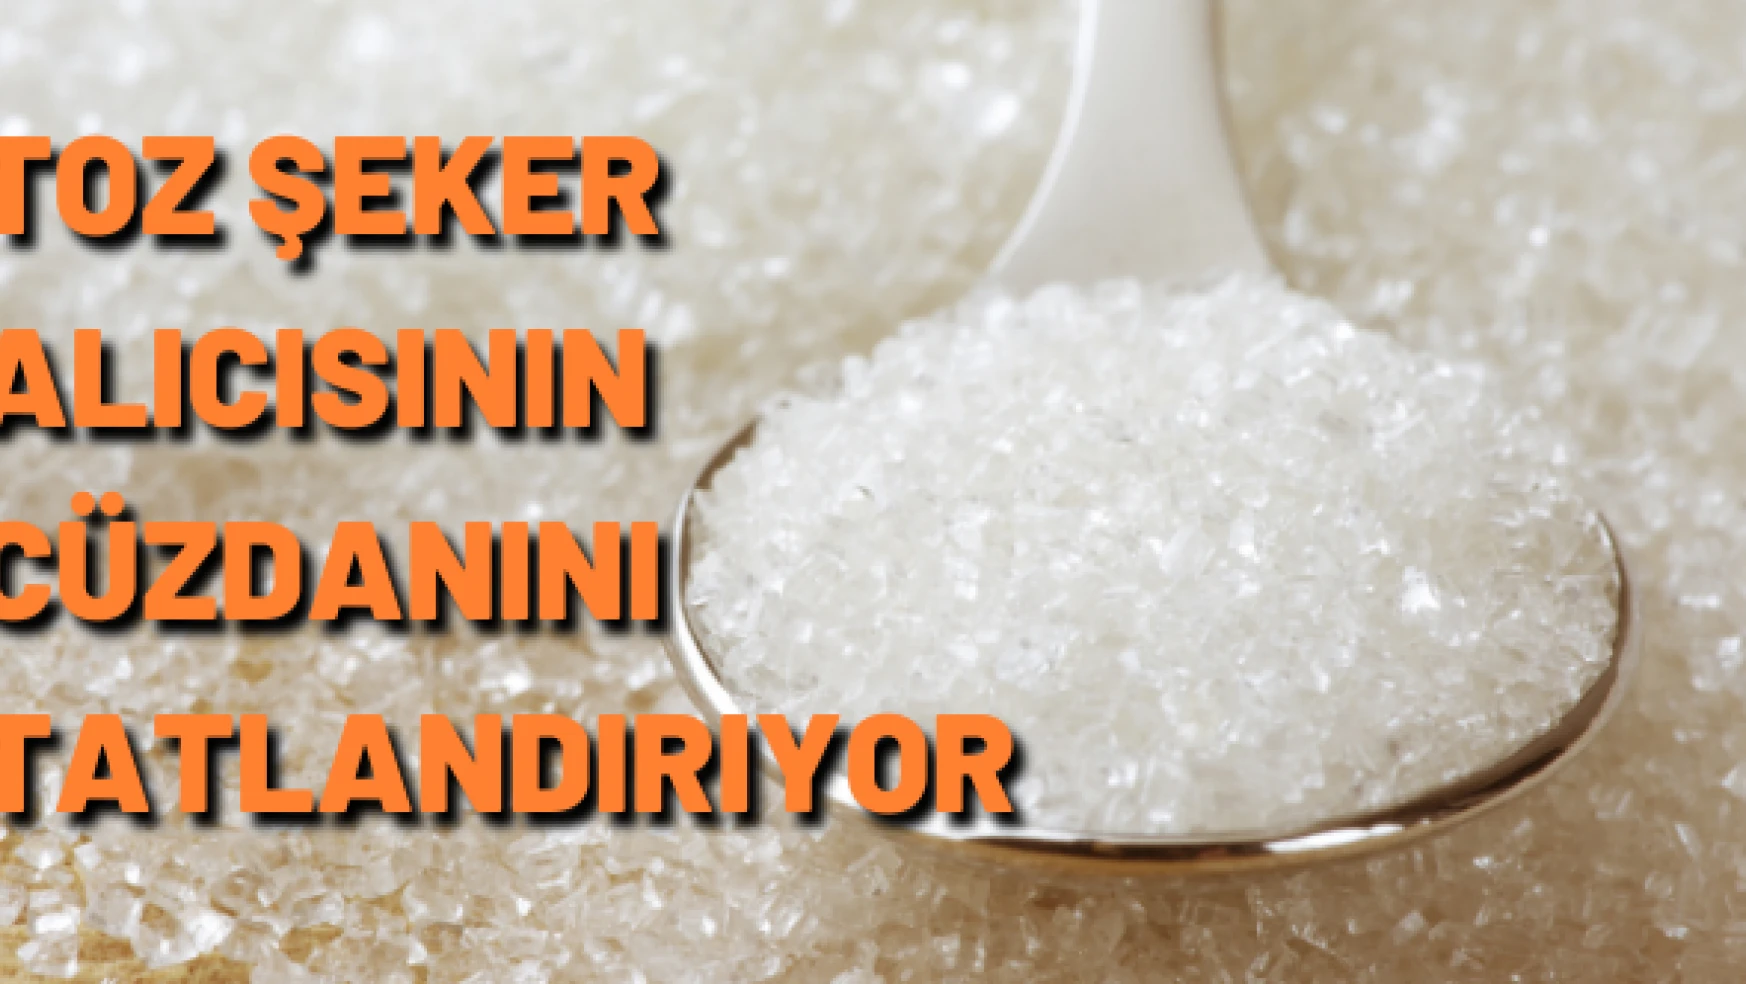 Erciş'te toz şekerin fiyatı düşürüldü